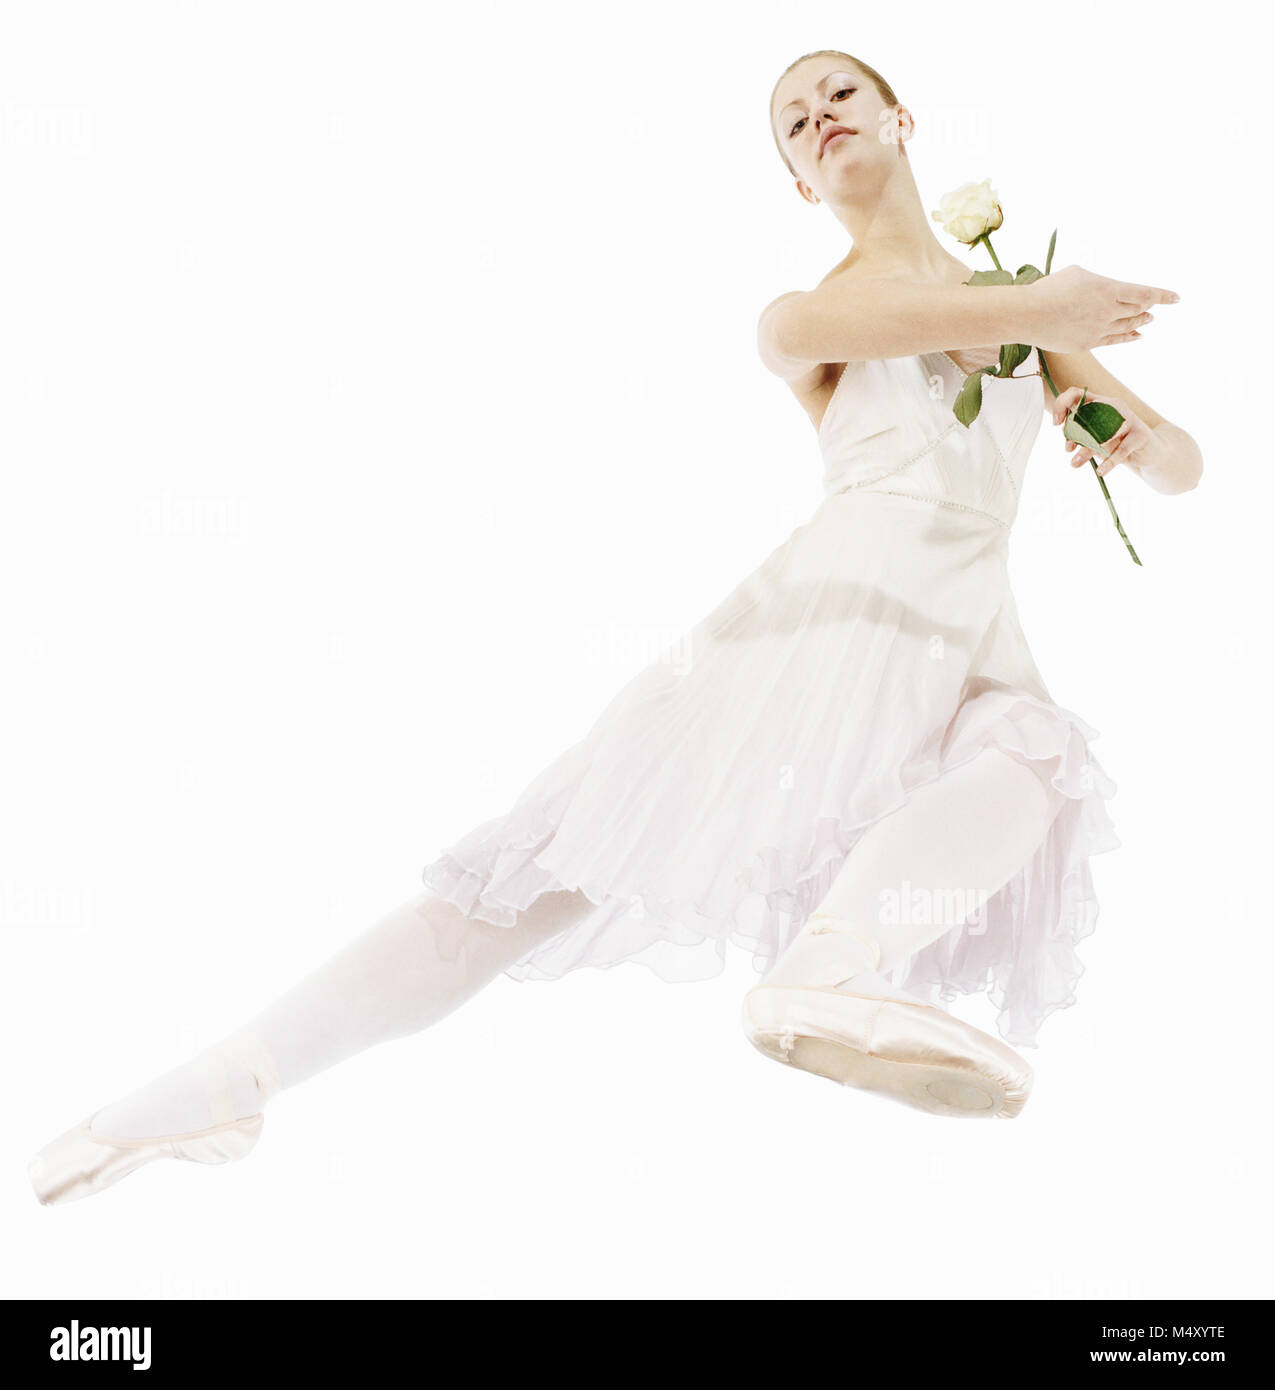 A ballet dancer Stock Photo